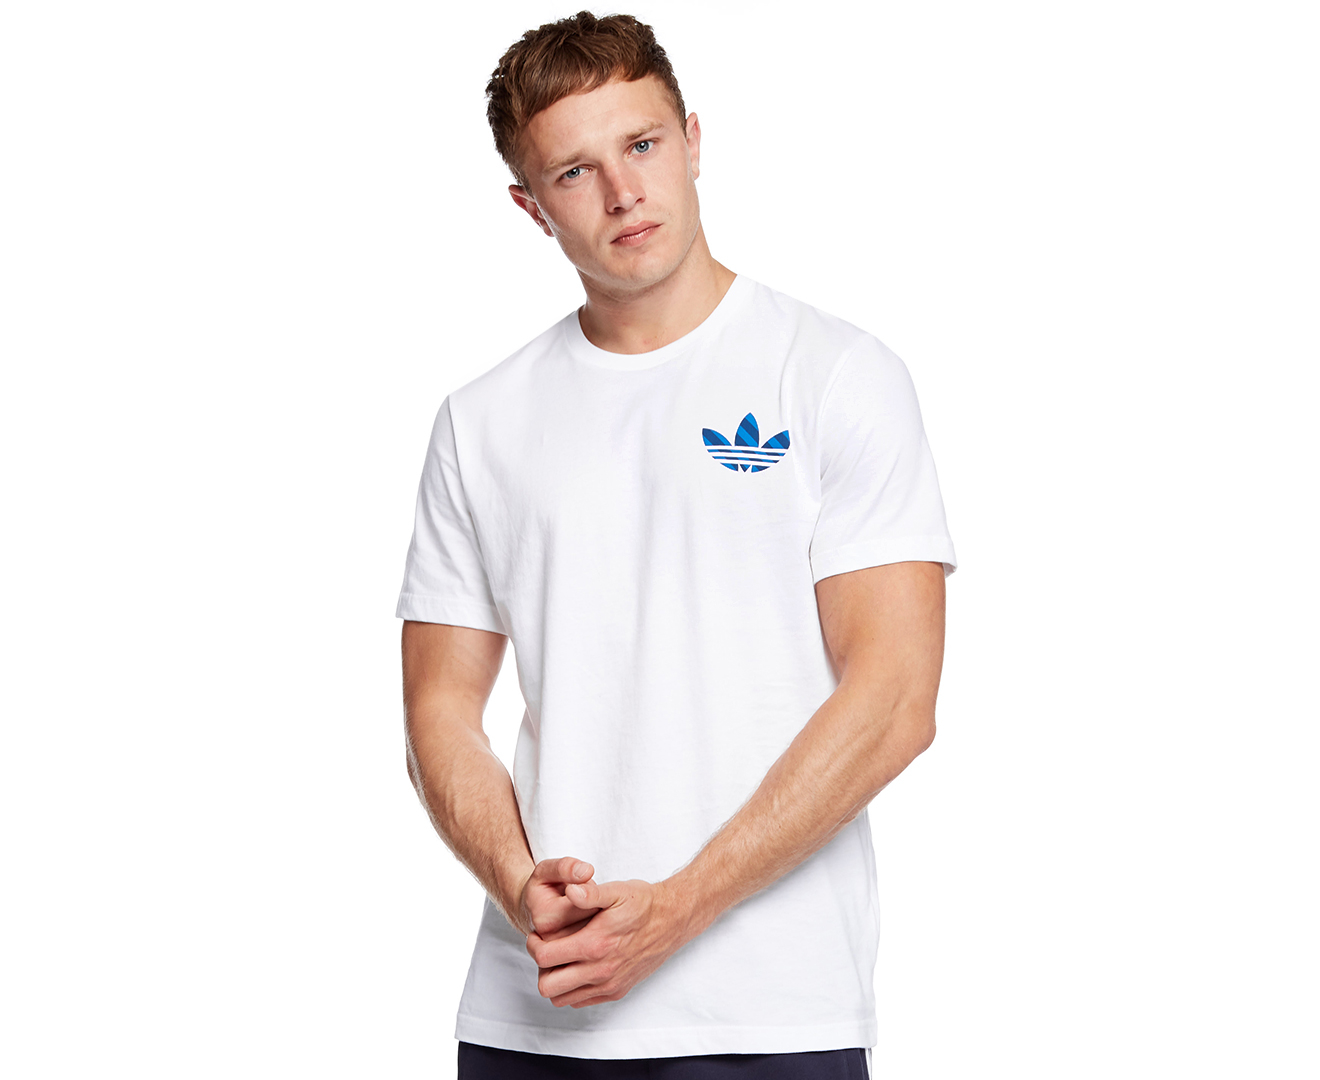 Adidas Originals Men's Adi Slogan Tee - White | Catch.com.au